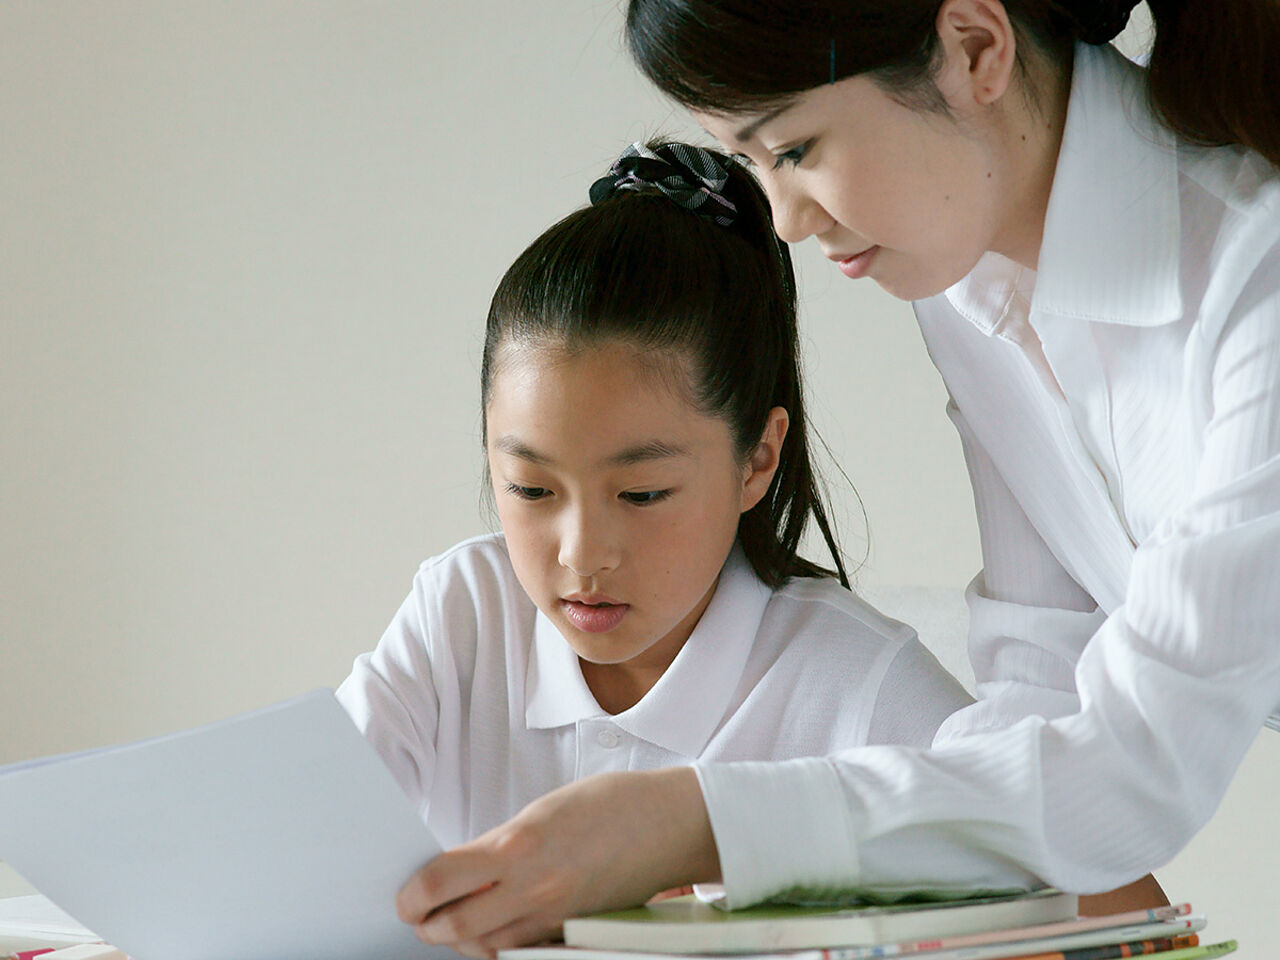 女性講師と女子生徒が勉強している画像